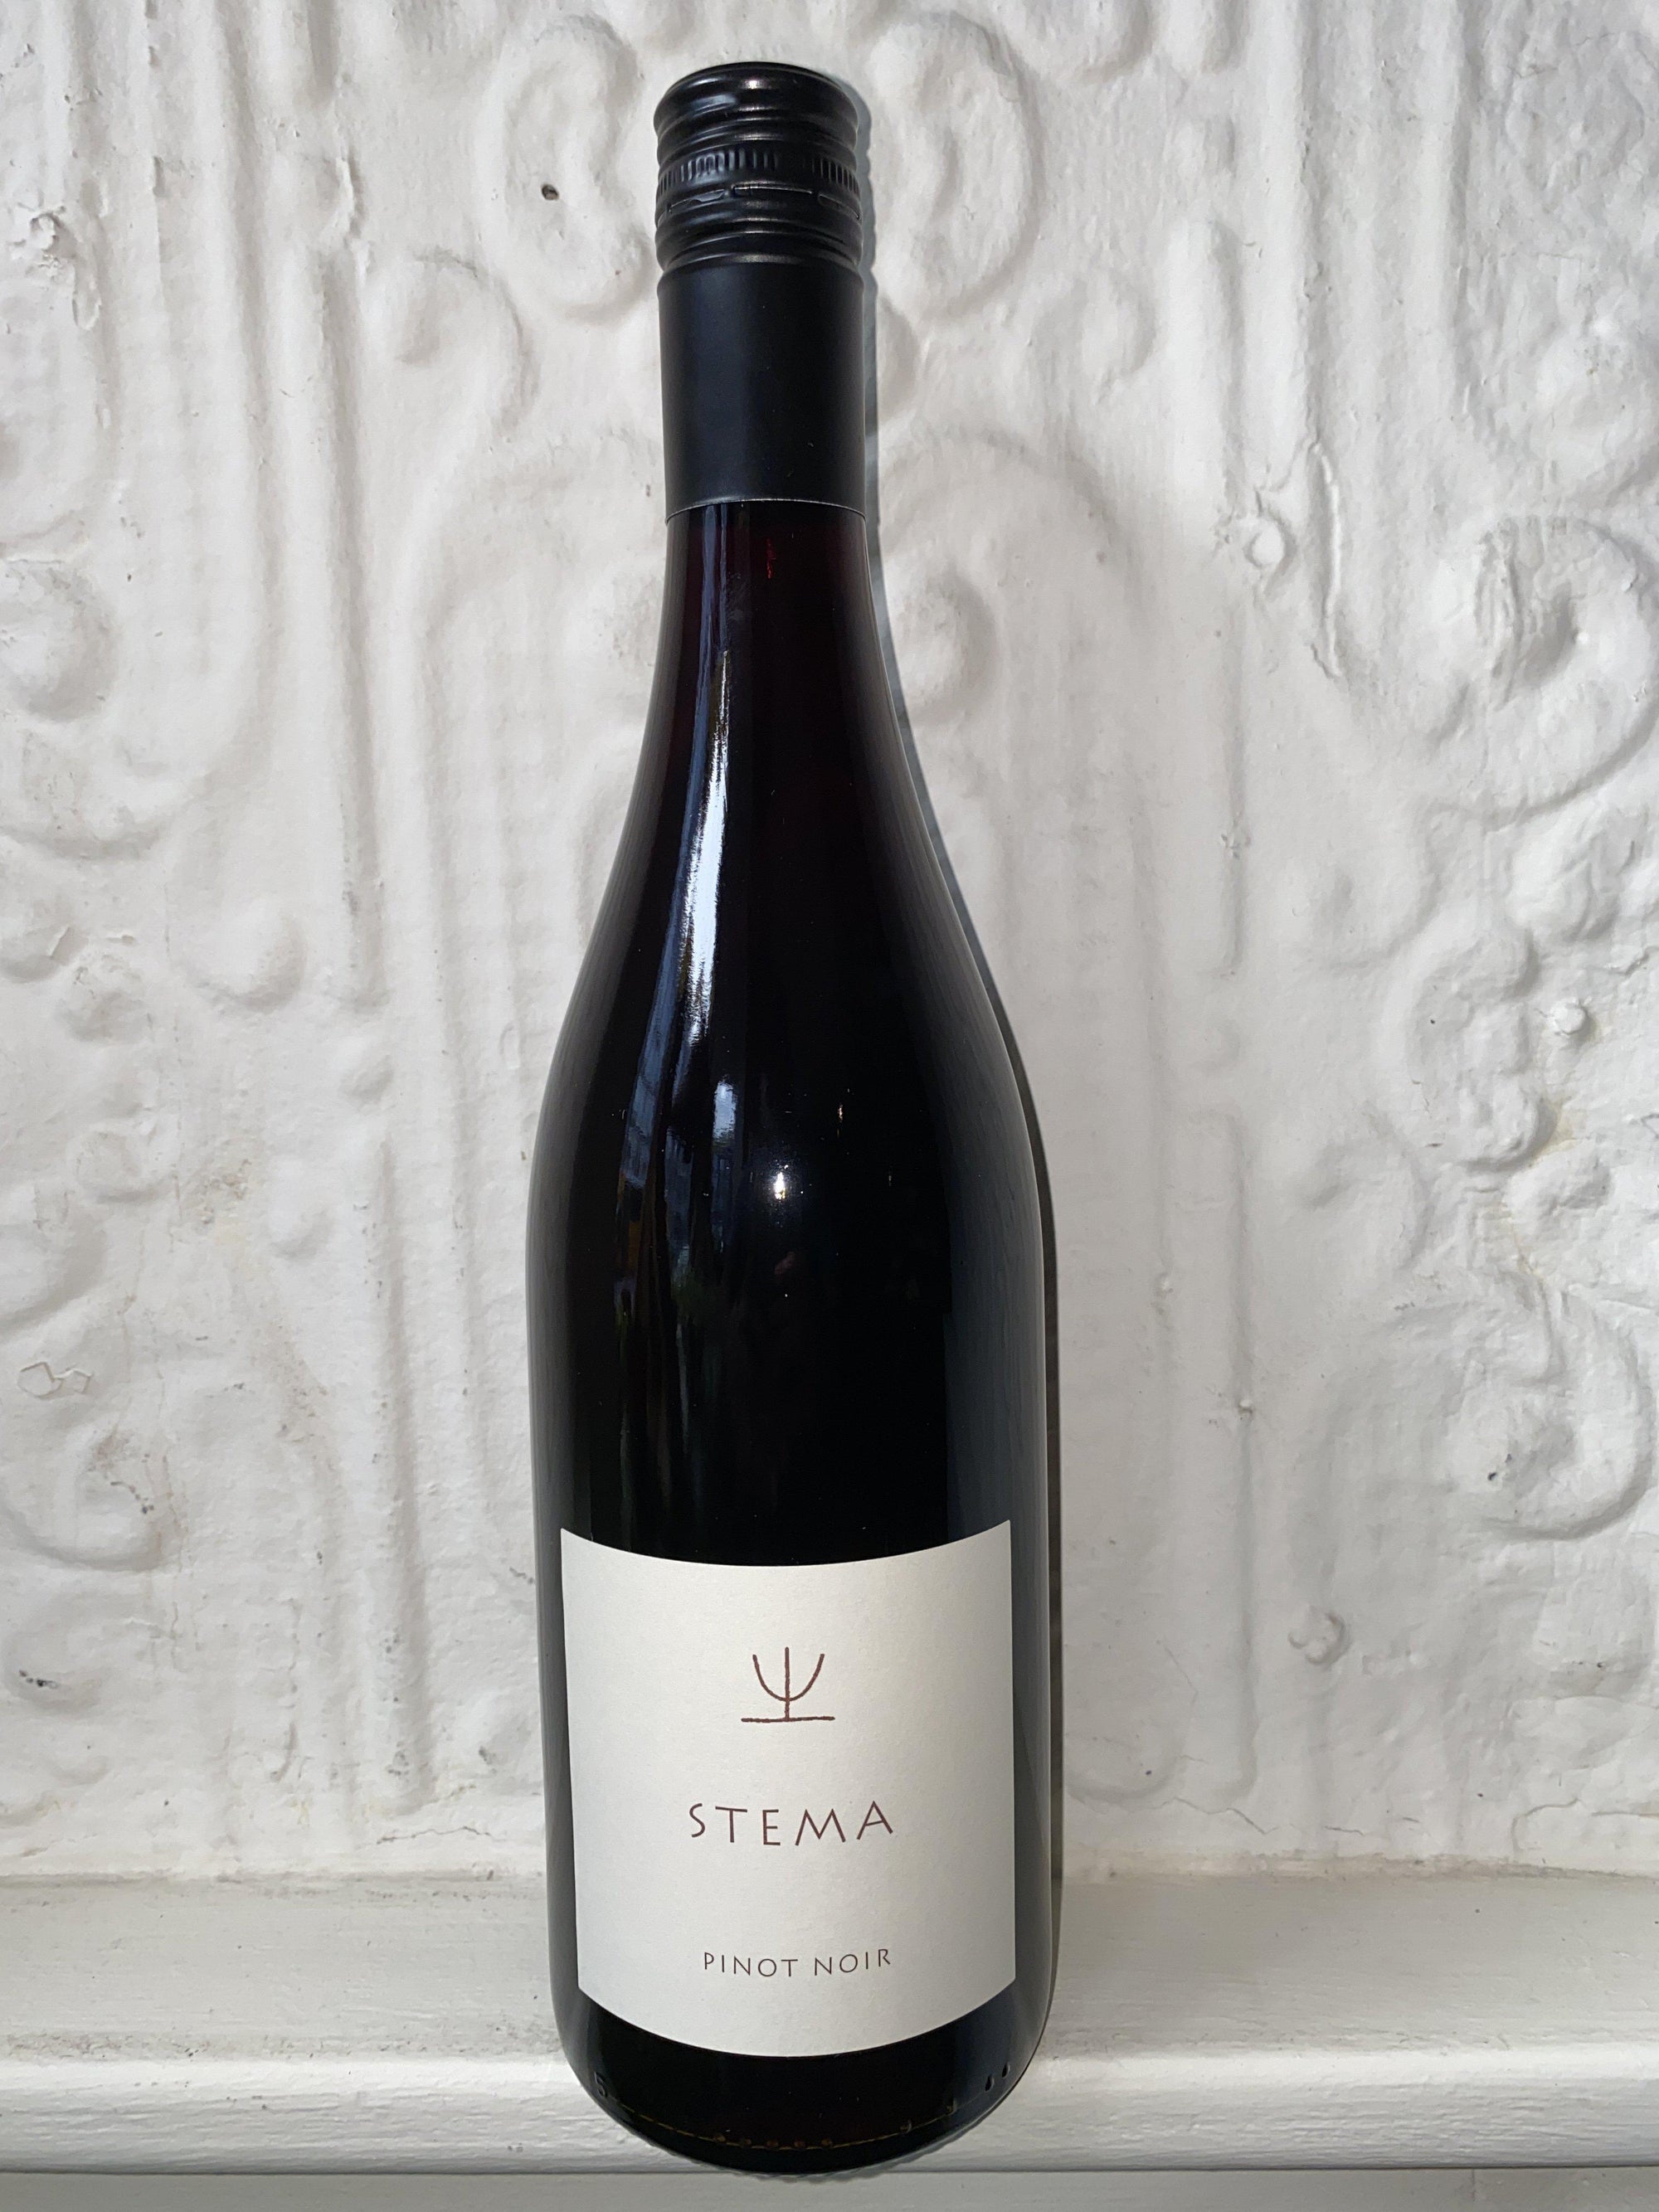 Stema Pinot Nero, Terregaie 2019 (Veneto, Italy)-Wine-Bibber & Bell